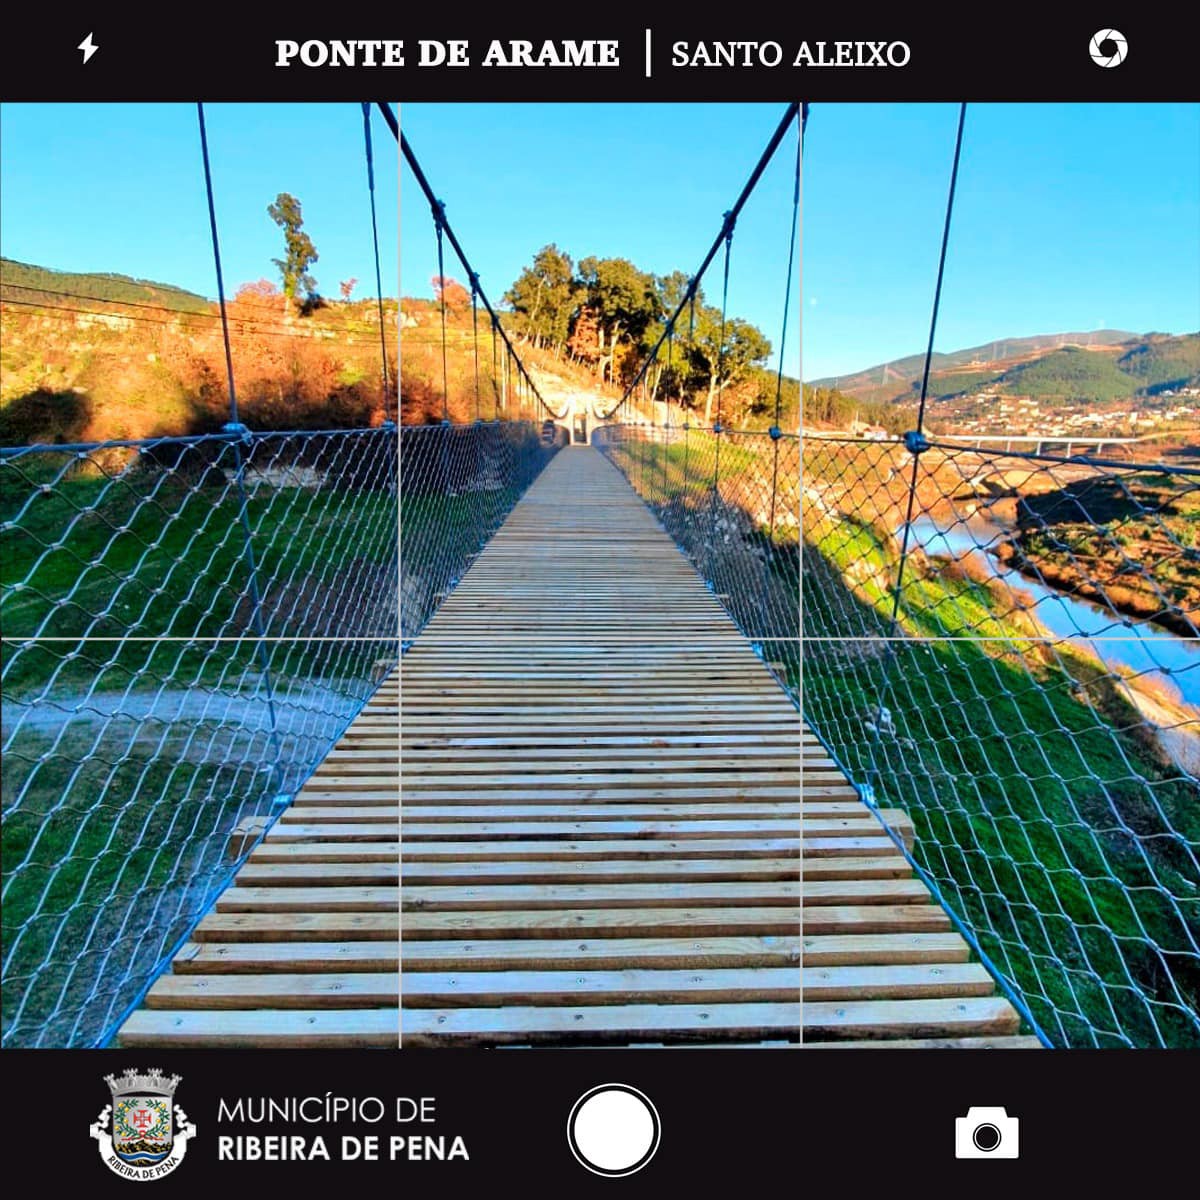 Ponte de arame reposta junto à albufeira do Tâmega já é atração em Ribeira de Pena